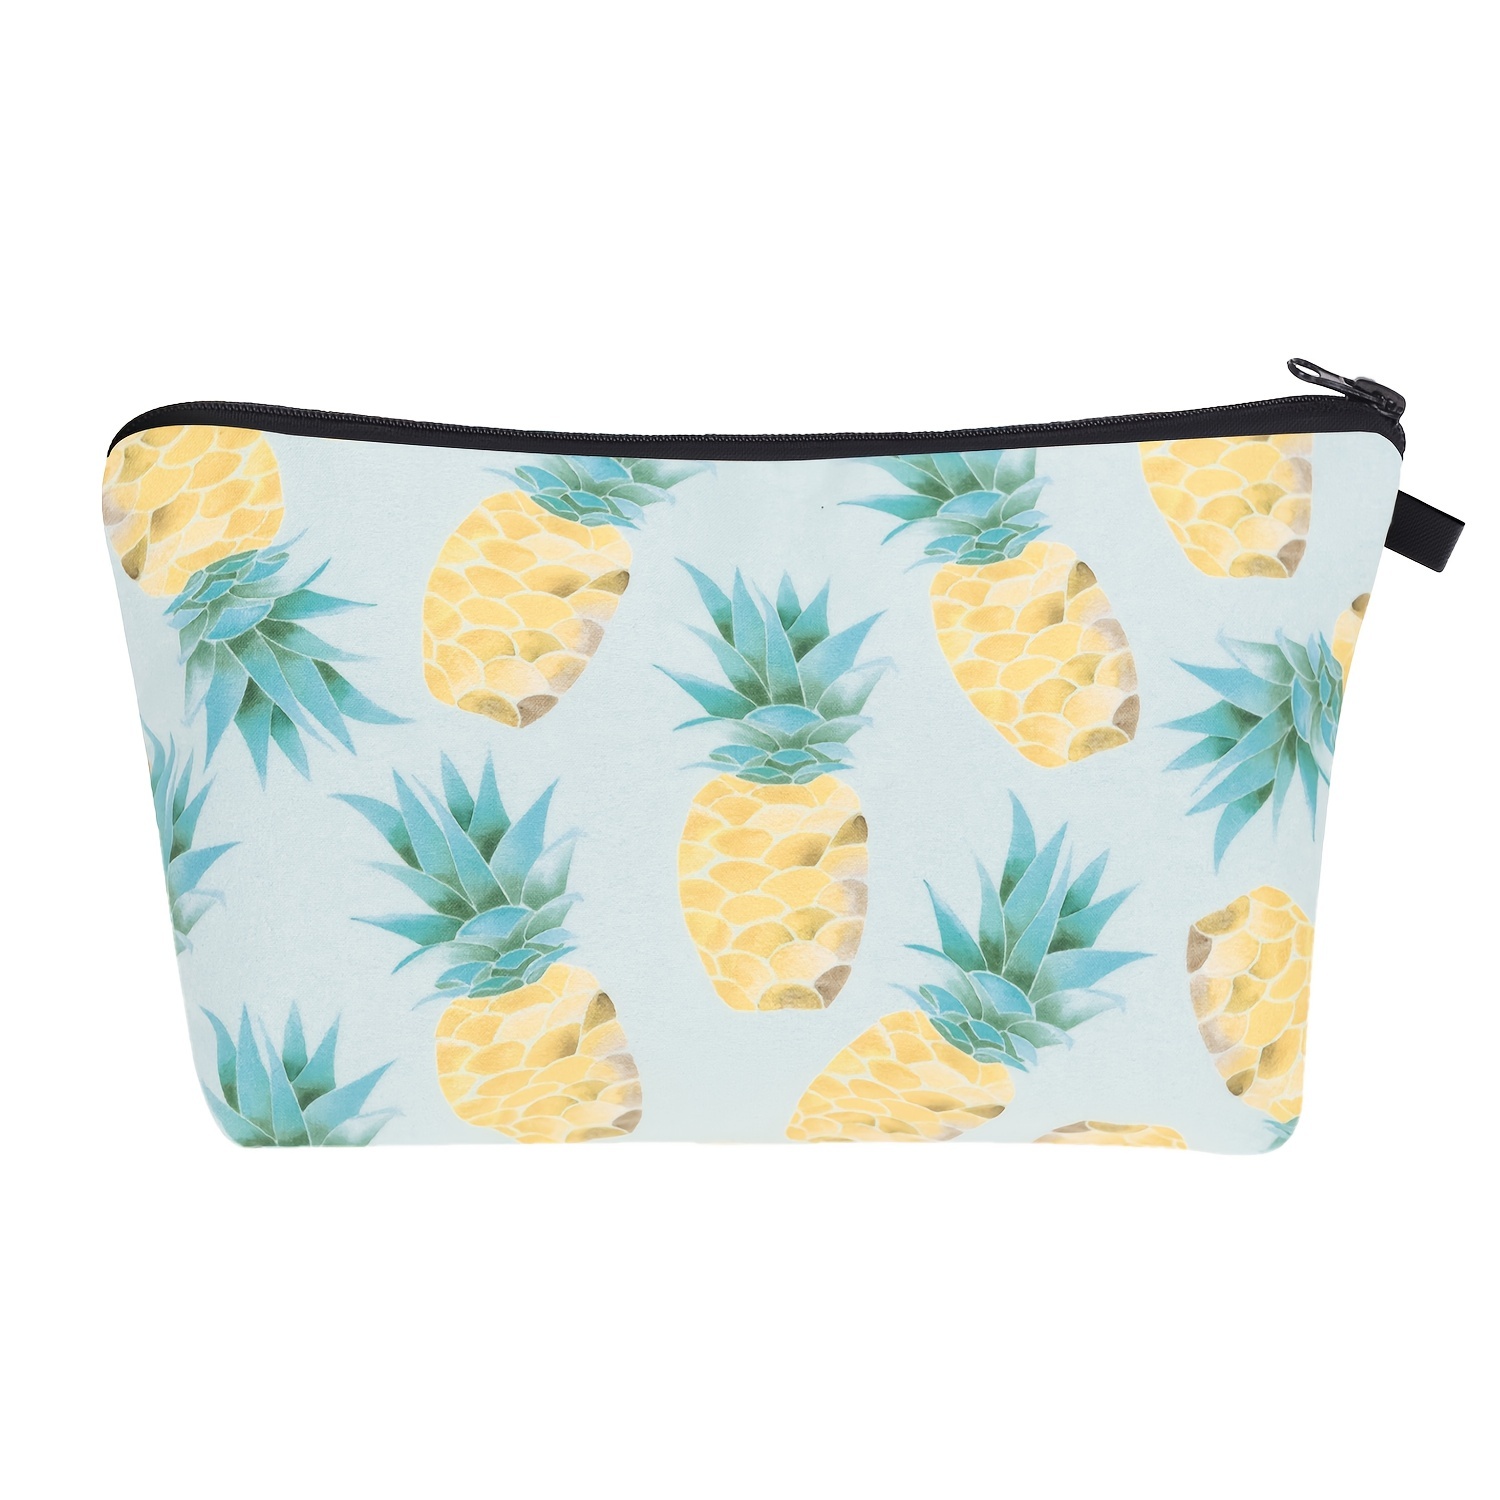 Makeup Bag with Cartoon Pineapple Print